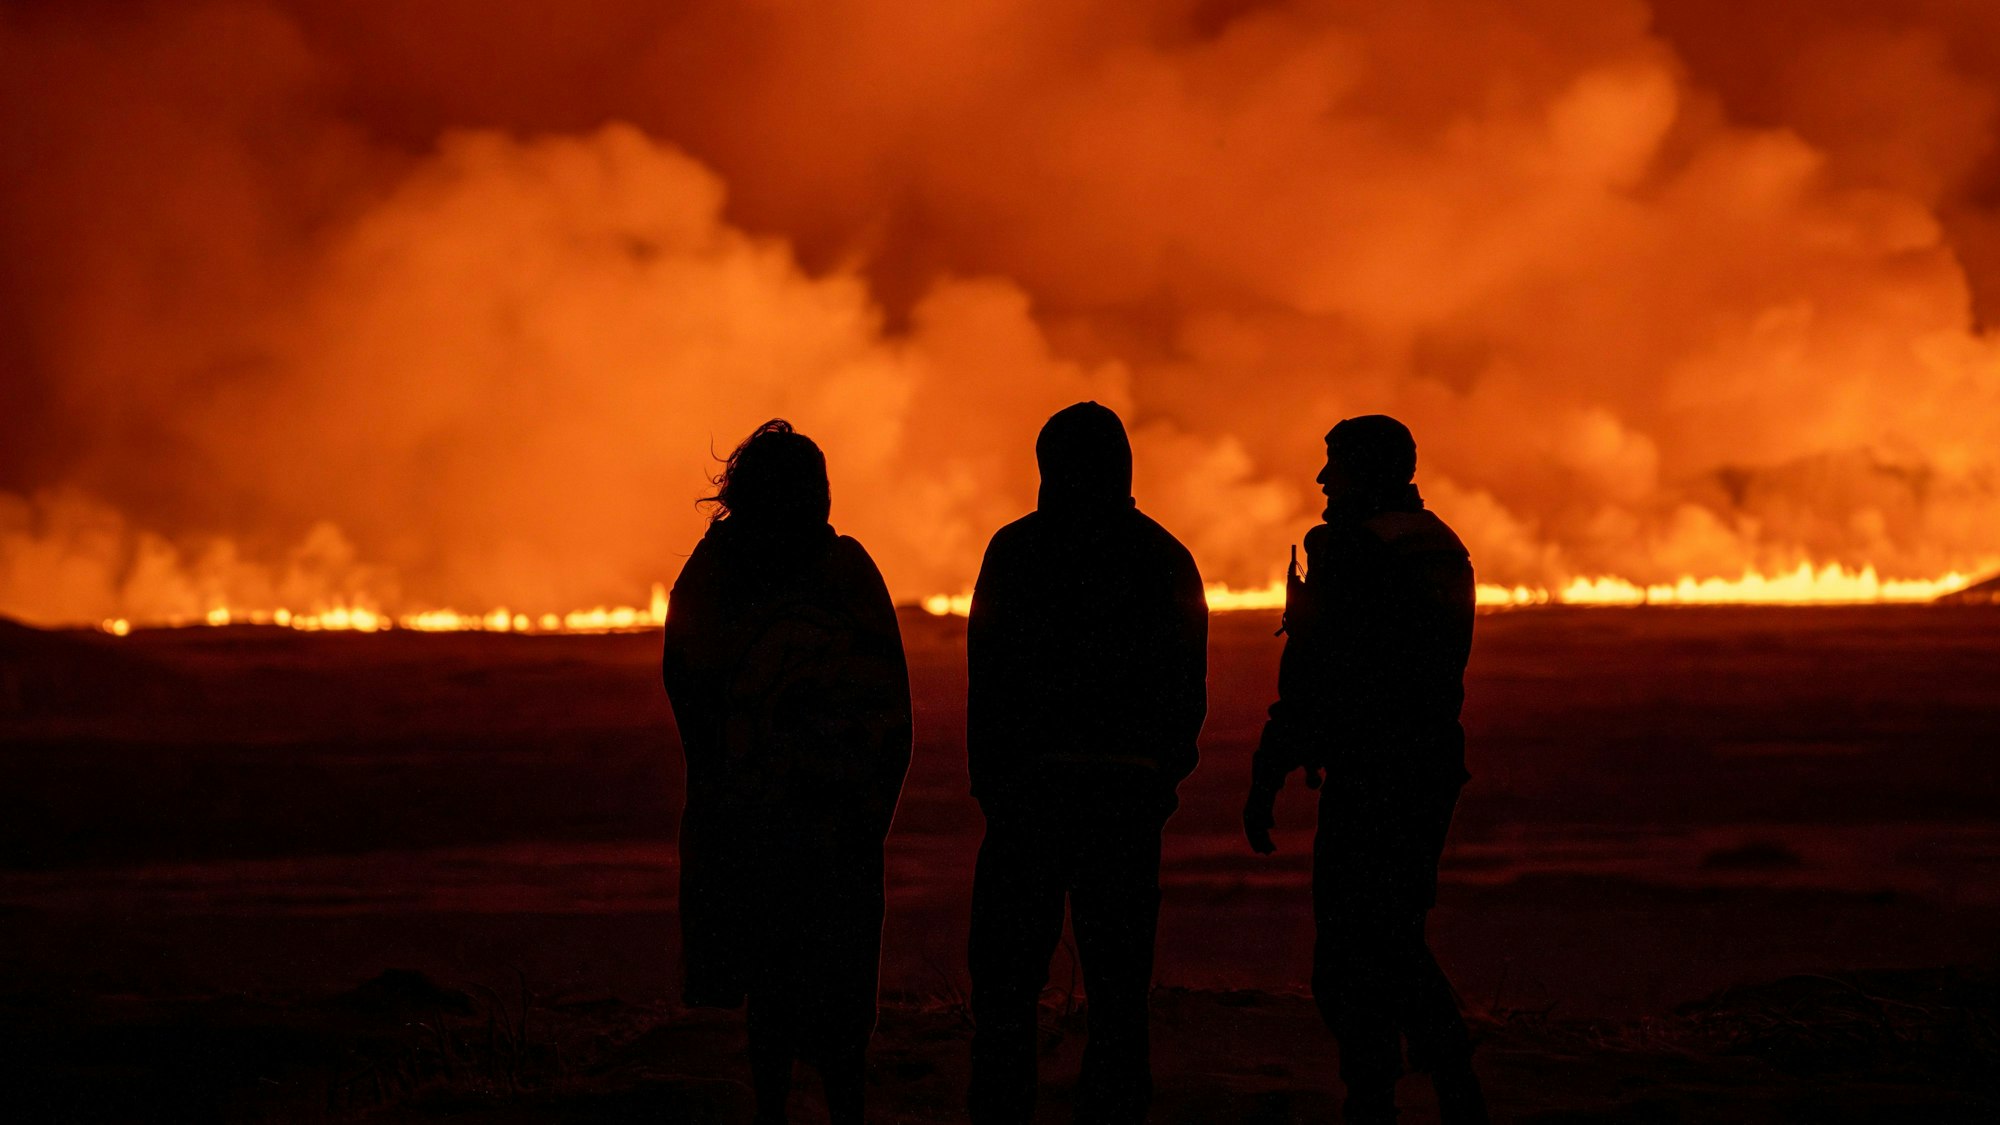 Vulkanausbruch auf Island: Drei Personen beobachten das Feuer und den orangen Rauch.